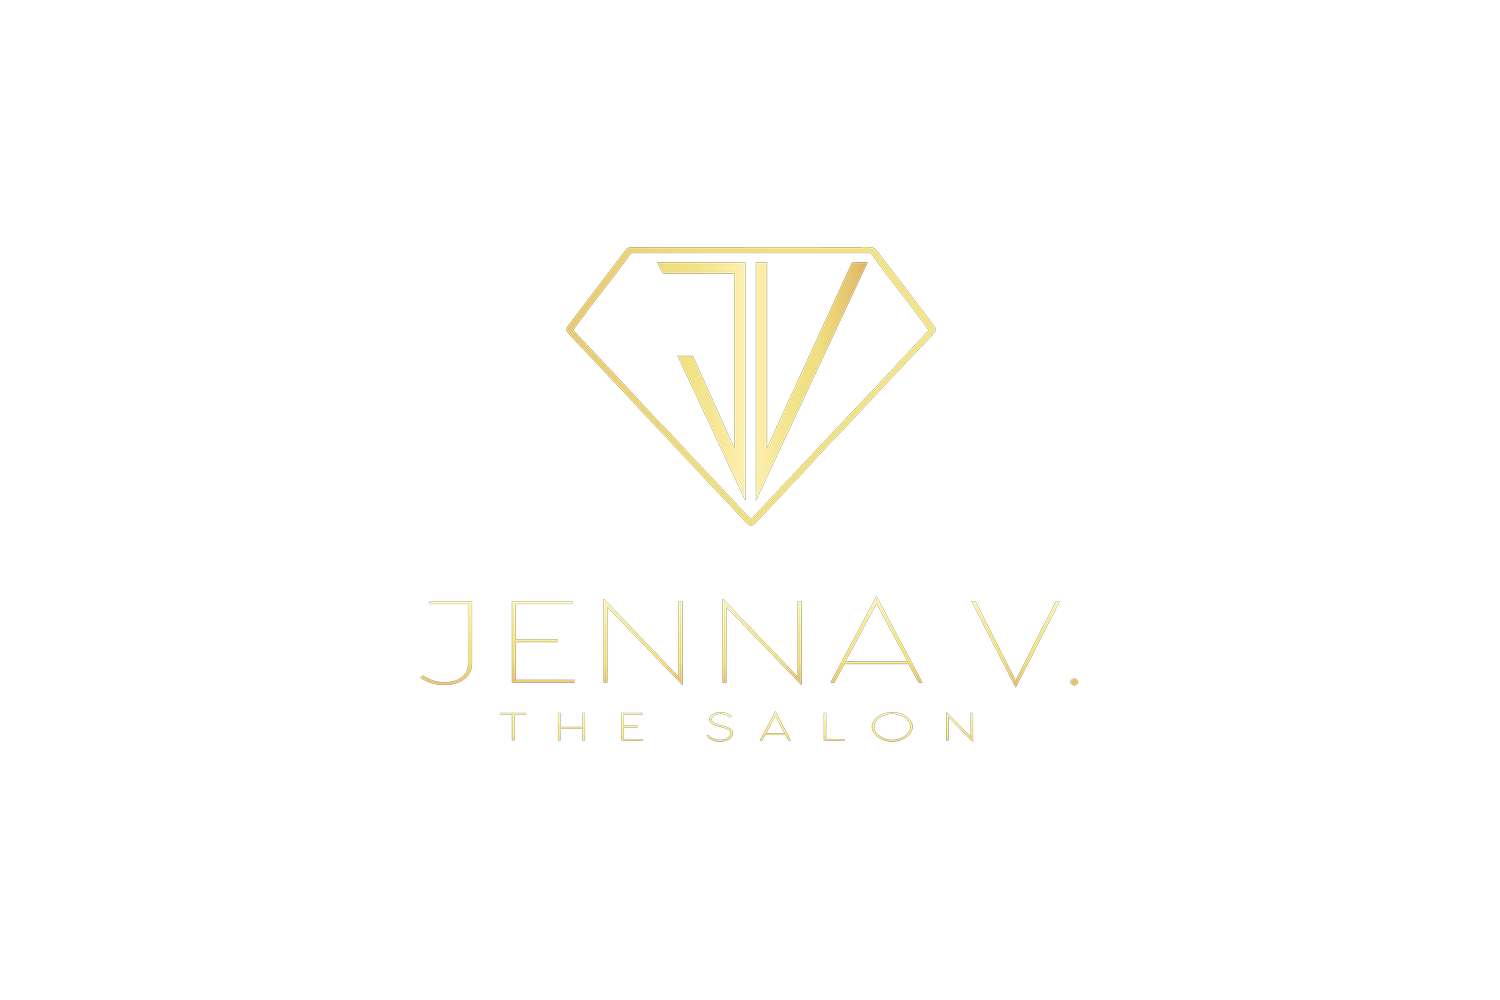 Jenna V. The Salon